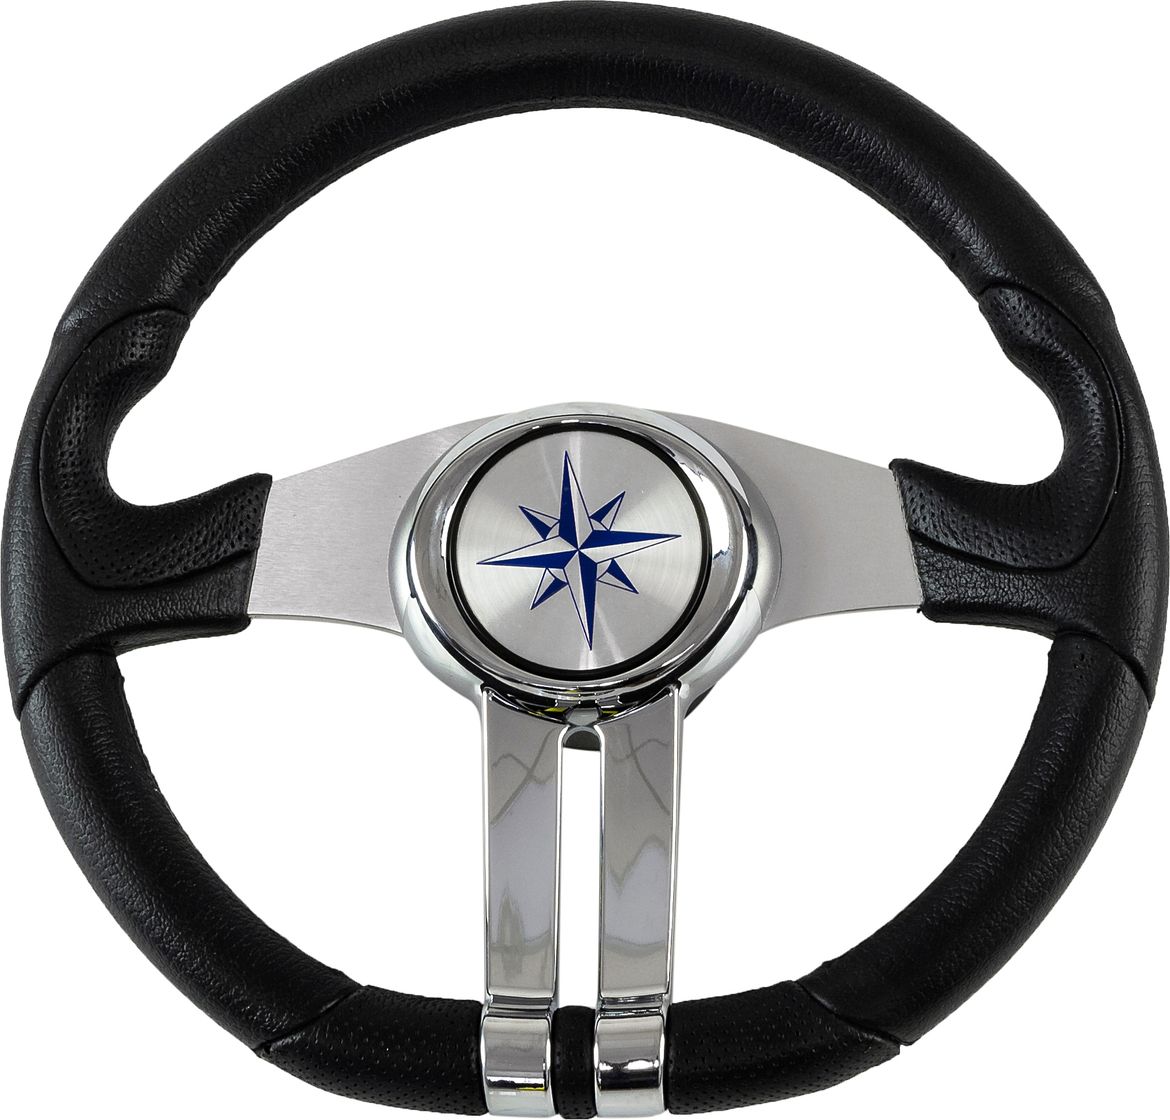 Рулевое колесо BALTIC обод черный, спицы серебряные д. 320 мм VN133203-01 рулевое колесо manta обод спицы серебряные д 355 мм vn70551 01